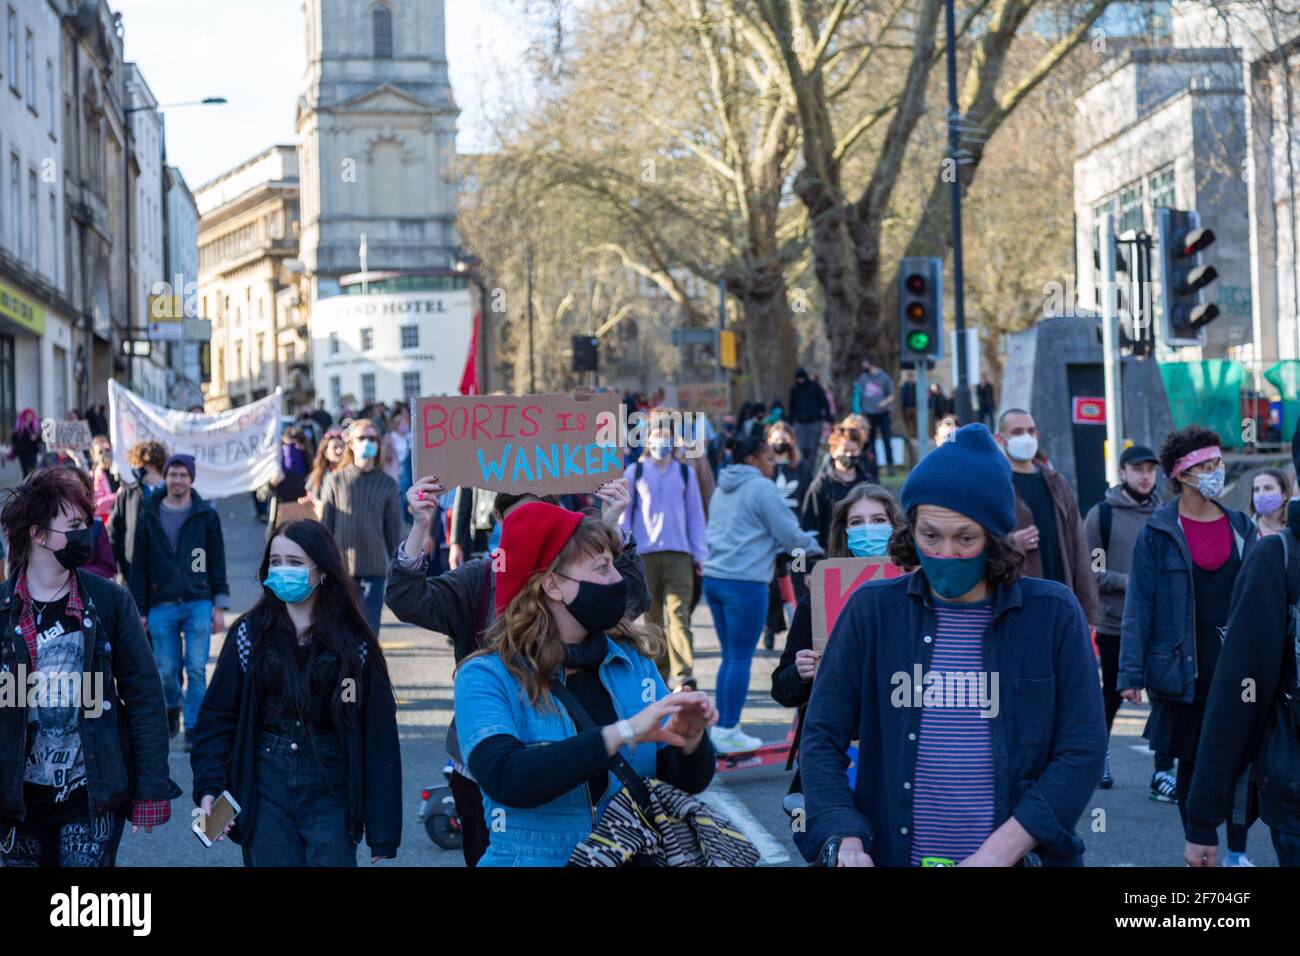 Bristol, Royaume-Uni, le 3 avril 2021. Les manifestants se sont rassemblés sur le College Green avant de marcher dans le centre-ville avant qu'une protestation et des discours assis aient eu lieu pacifiquement avec une présence policière minimale. Rob Hawkins / Alamy Live News Banque D'Images